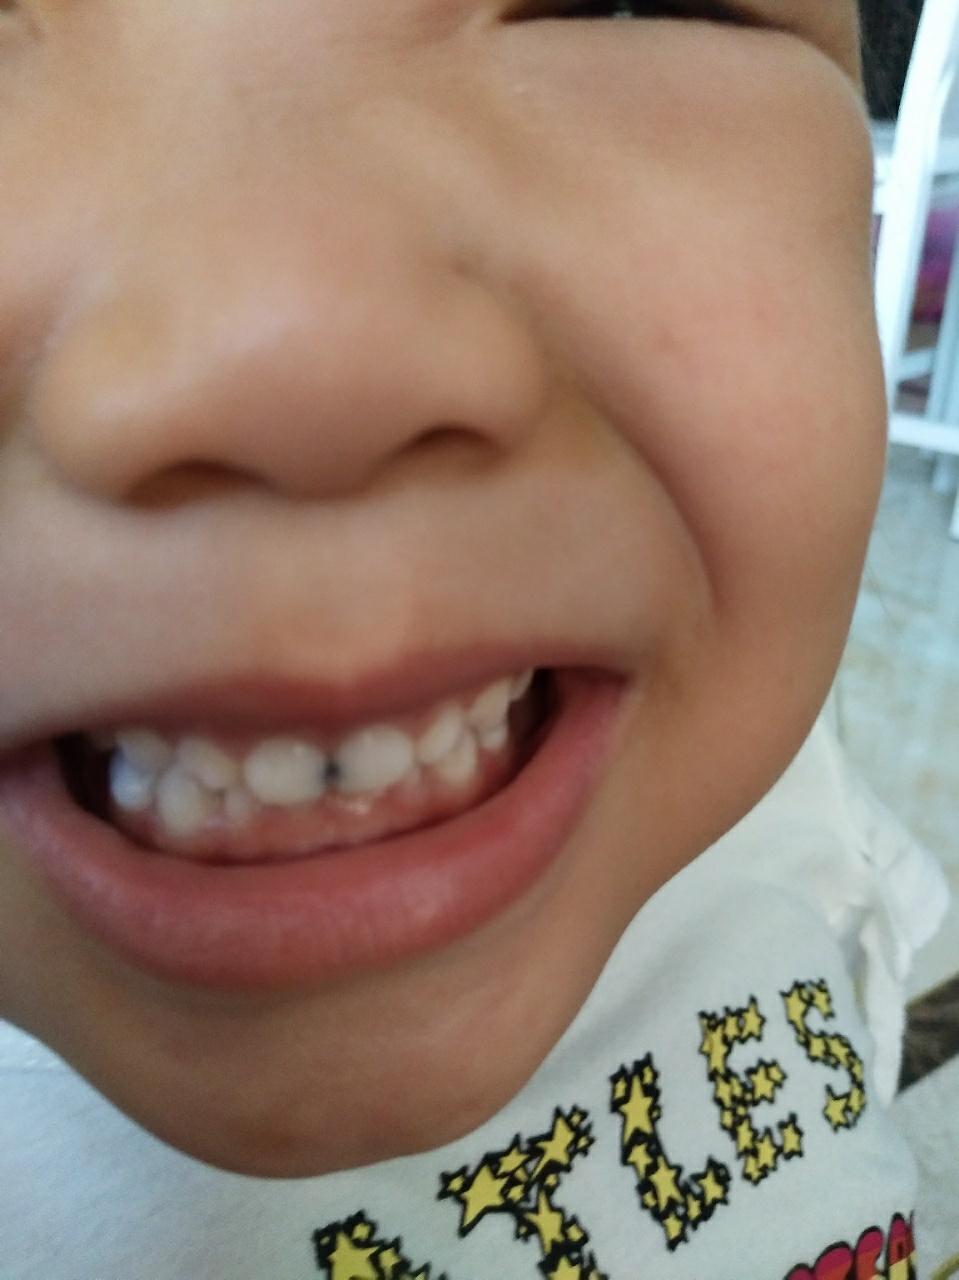 5岁的小孩,前面门牙中间缝隙有黑色的蛀牙,需要补牙吗?